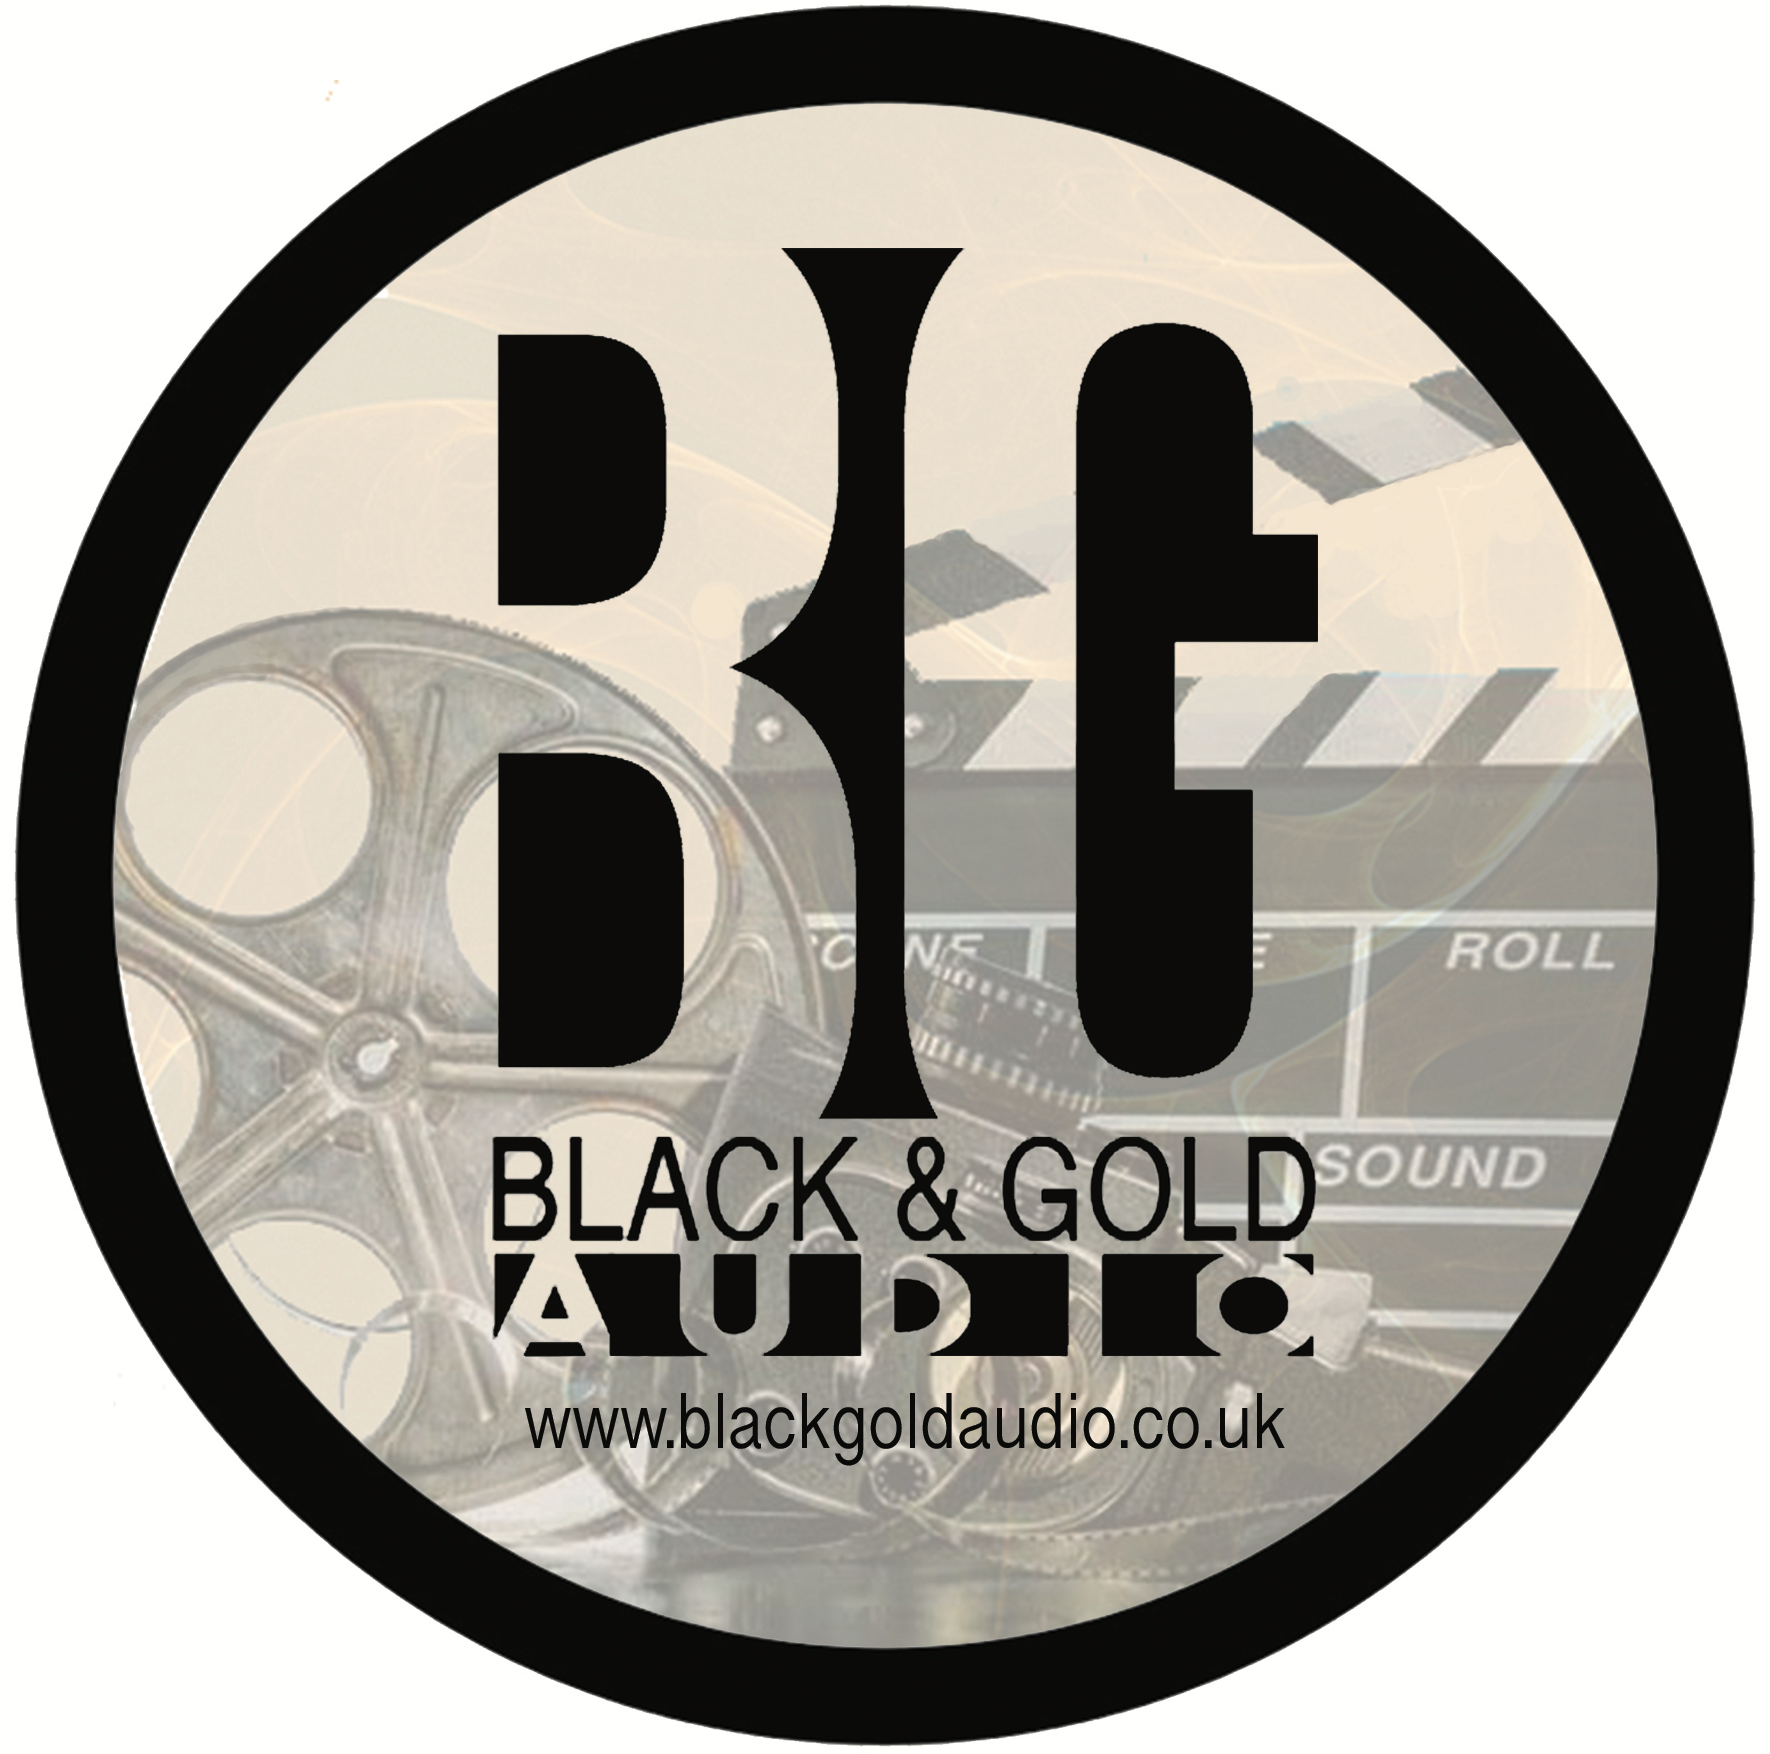 Black & Gold Audio